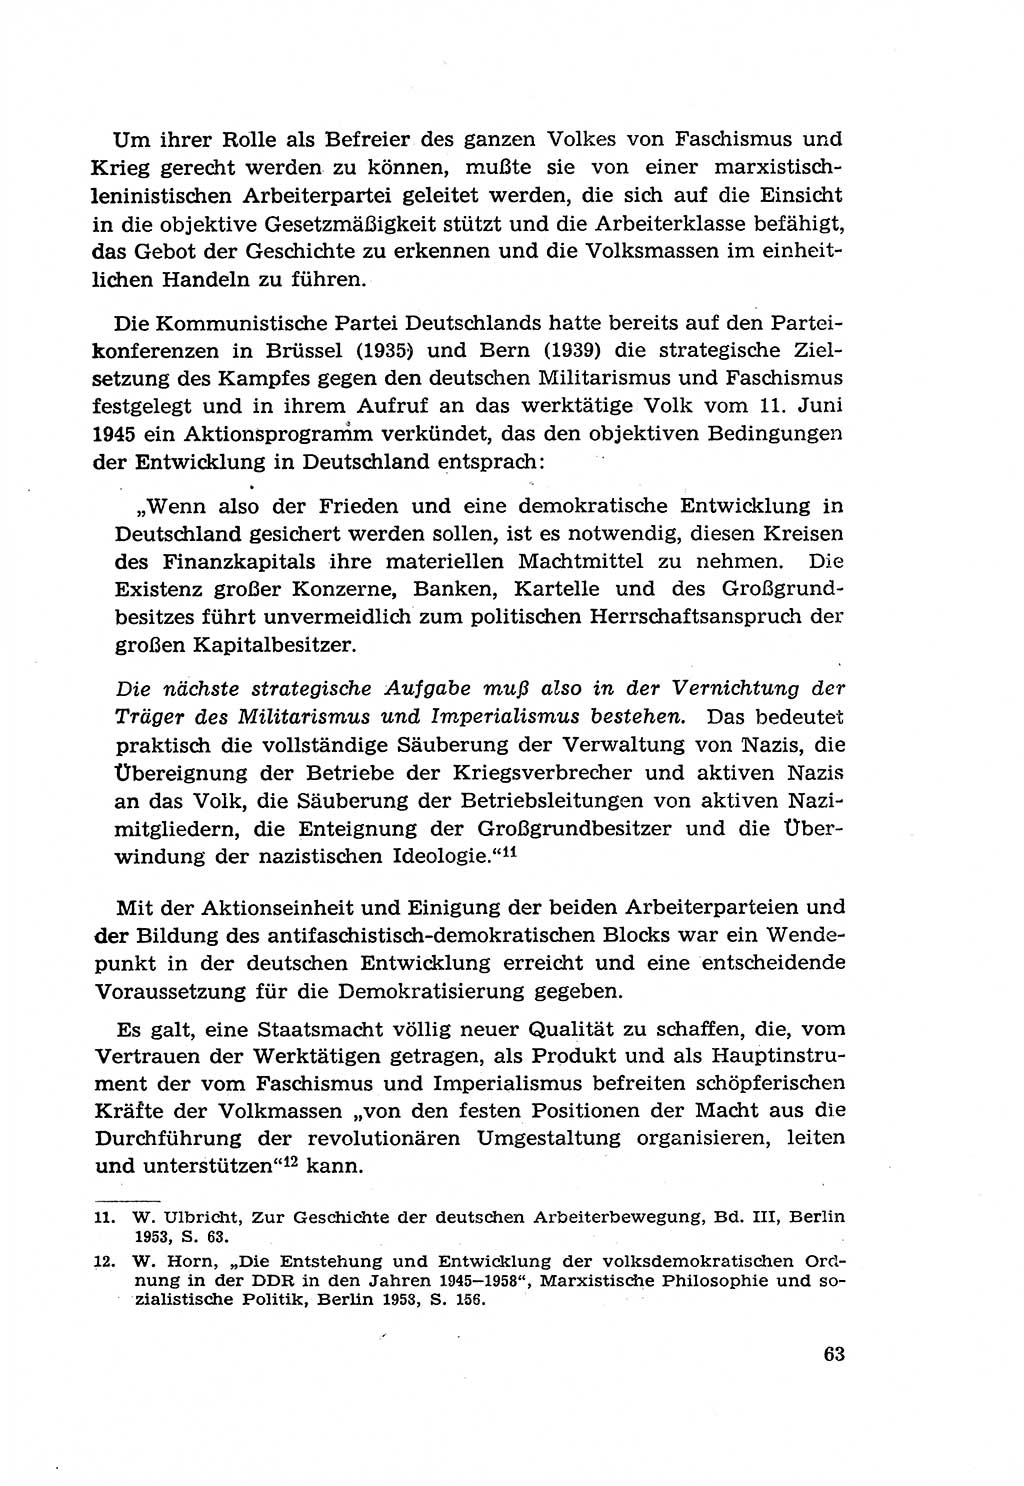 Zur Entwicklung des sozialistischen Strafrechts der Deutschen Demokratischen Republik (DDR) 1960, Seite 63 (Entw. soz. Strafr. DDR 1960, S. 63)